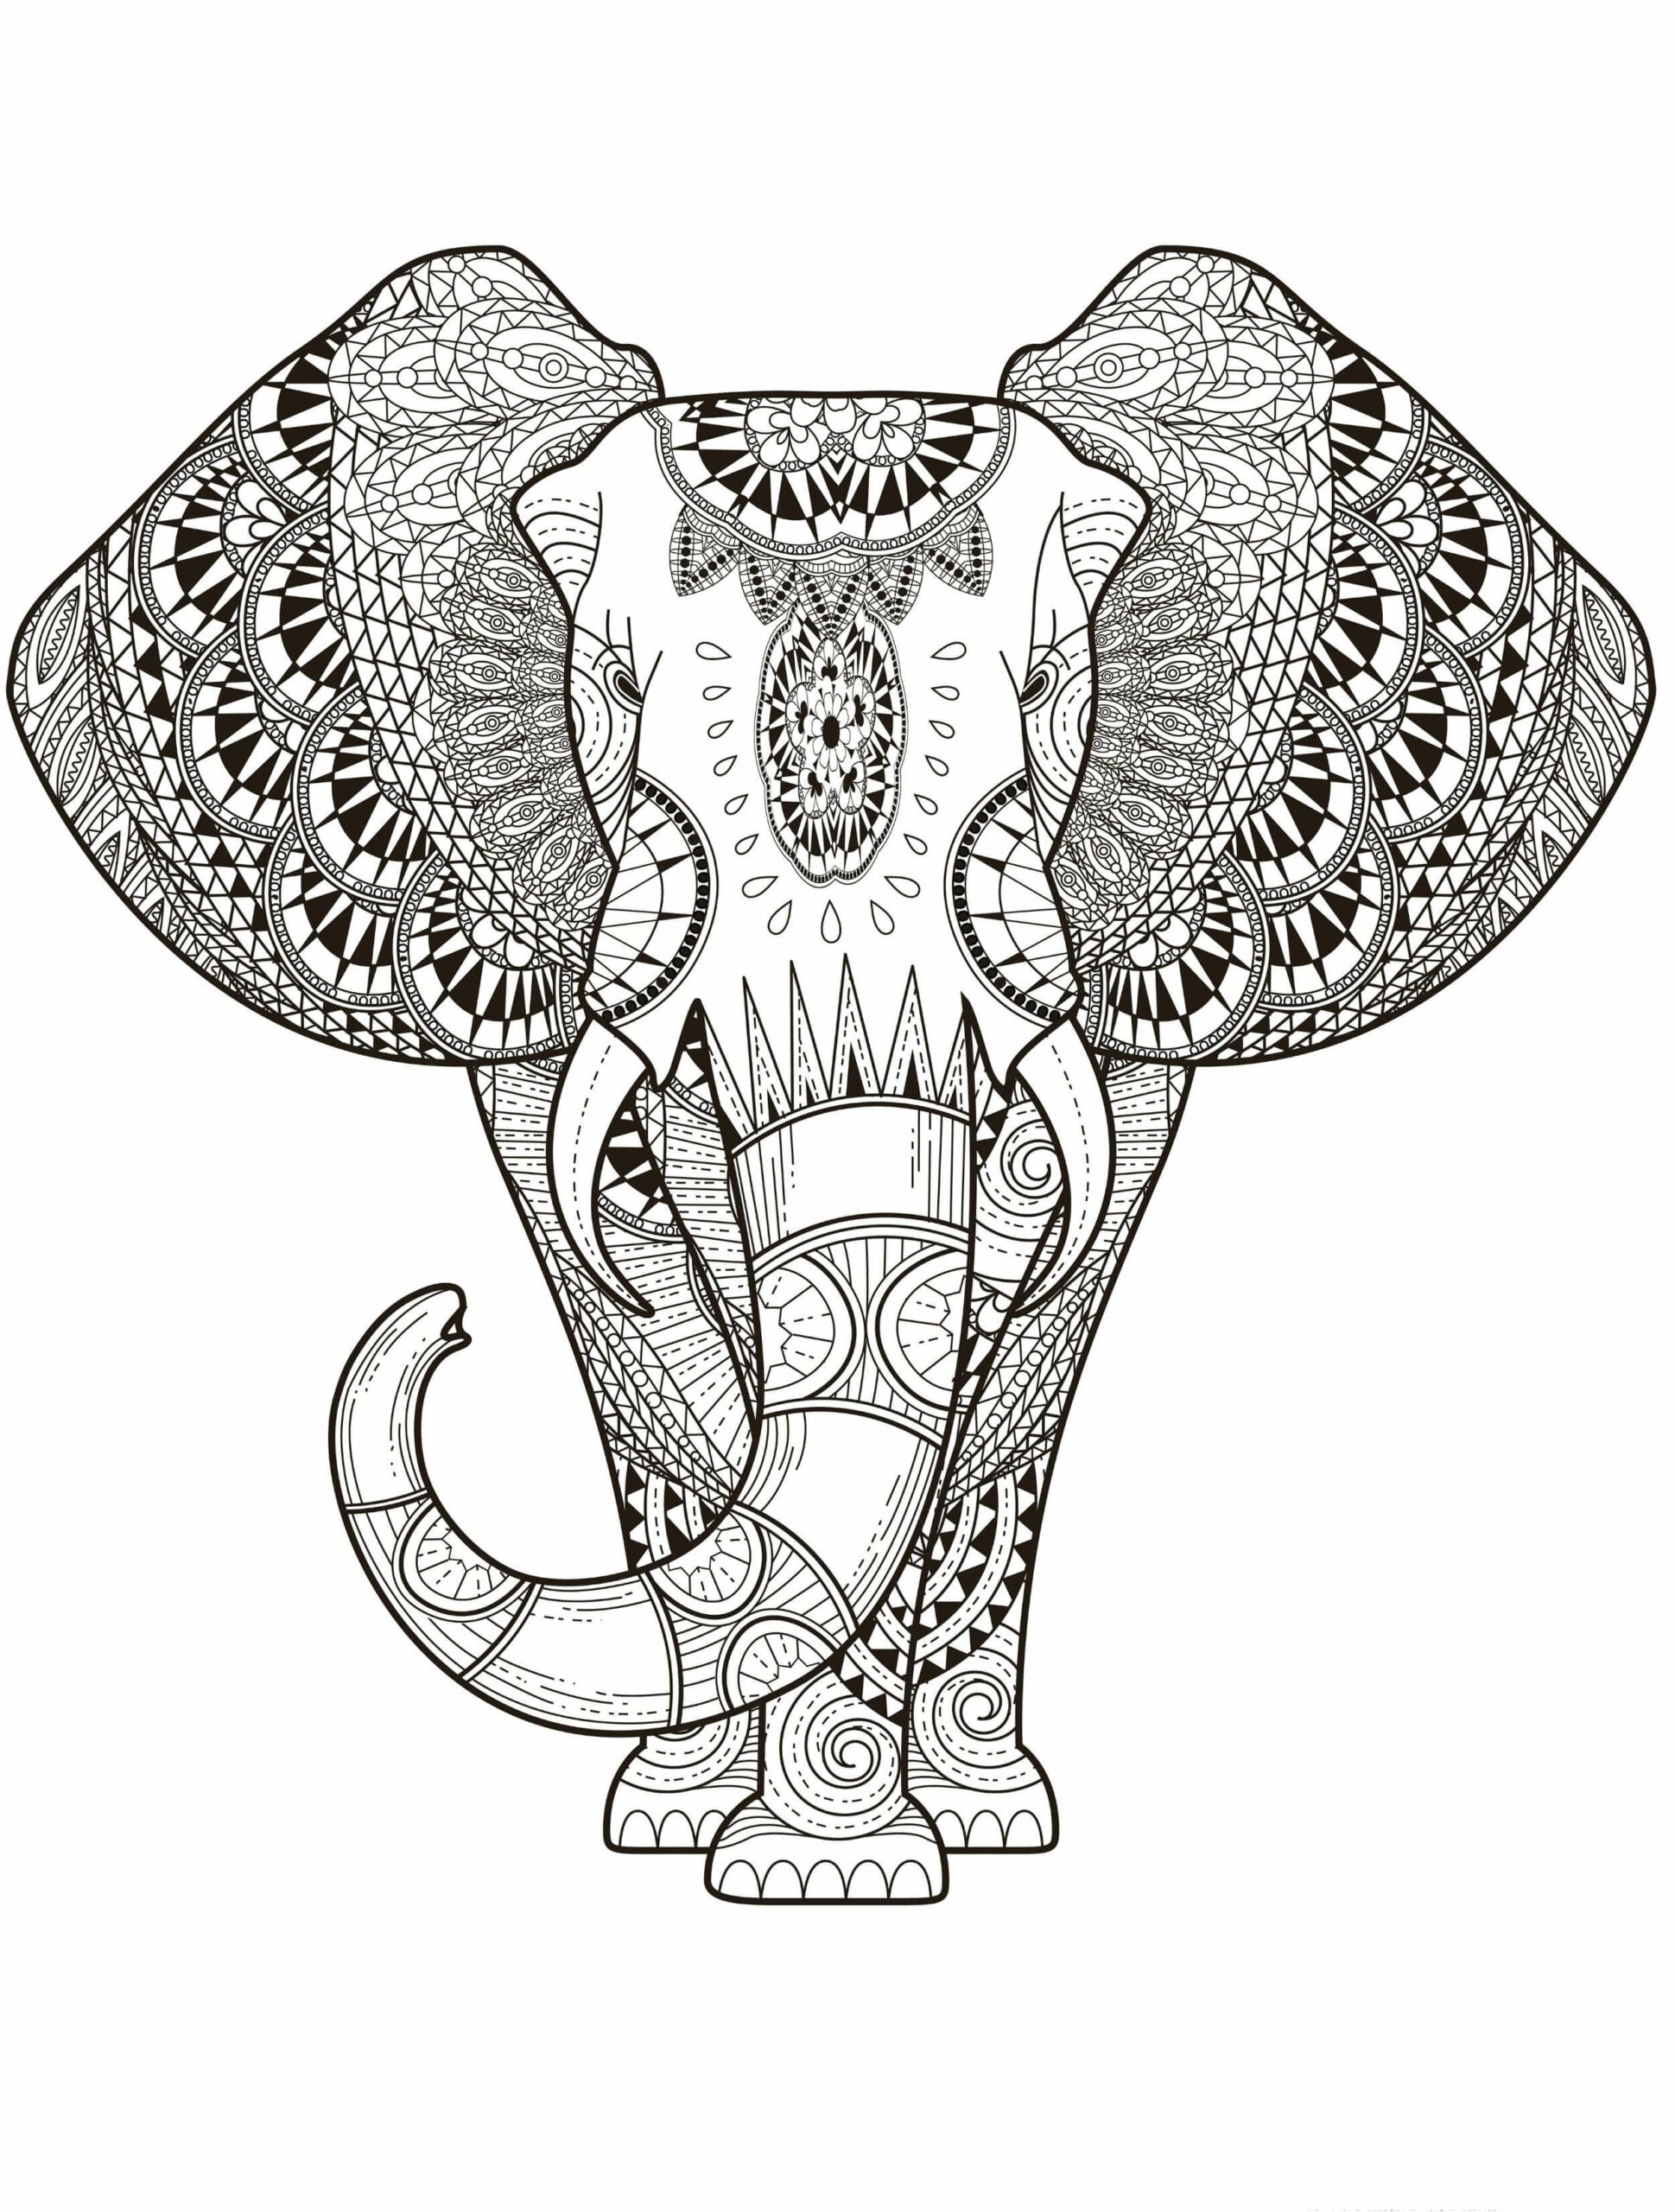 Mandala Elephant Coloring Page - Sheet 3 Mandalas